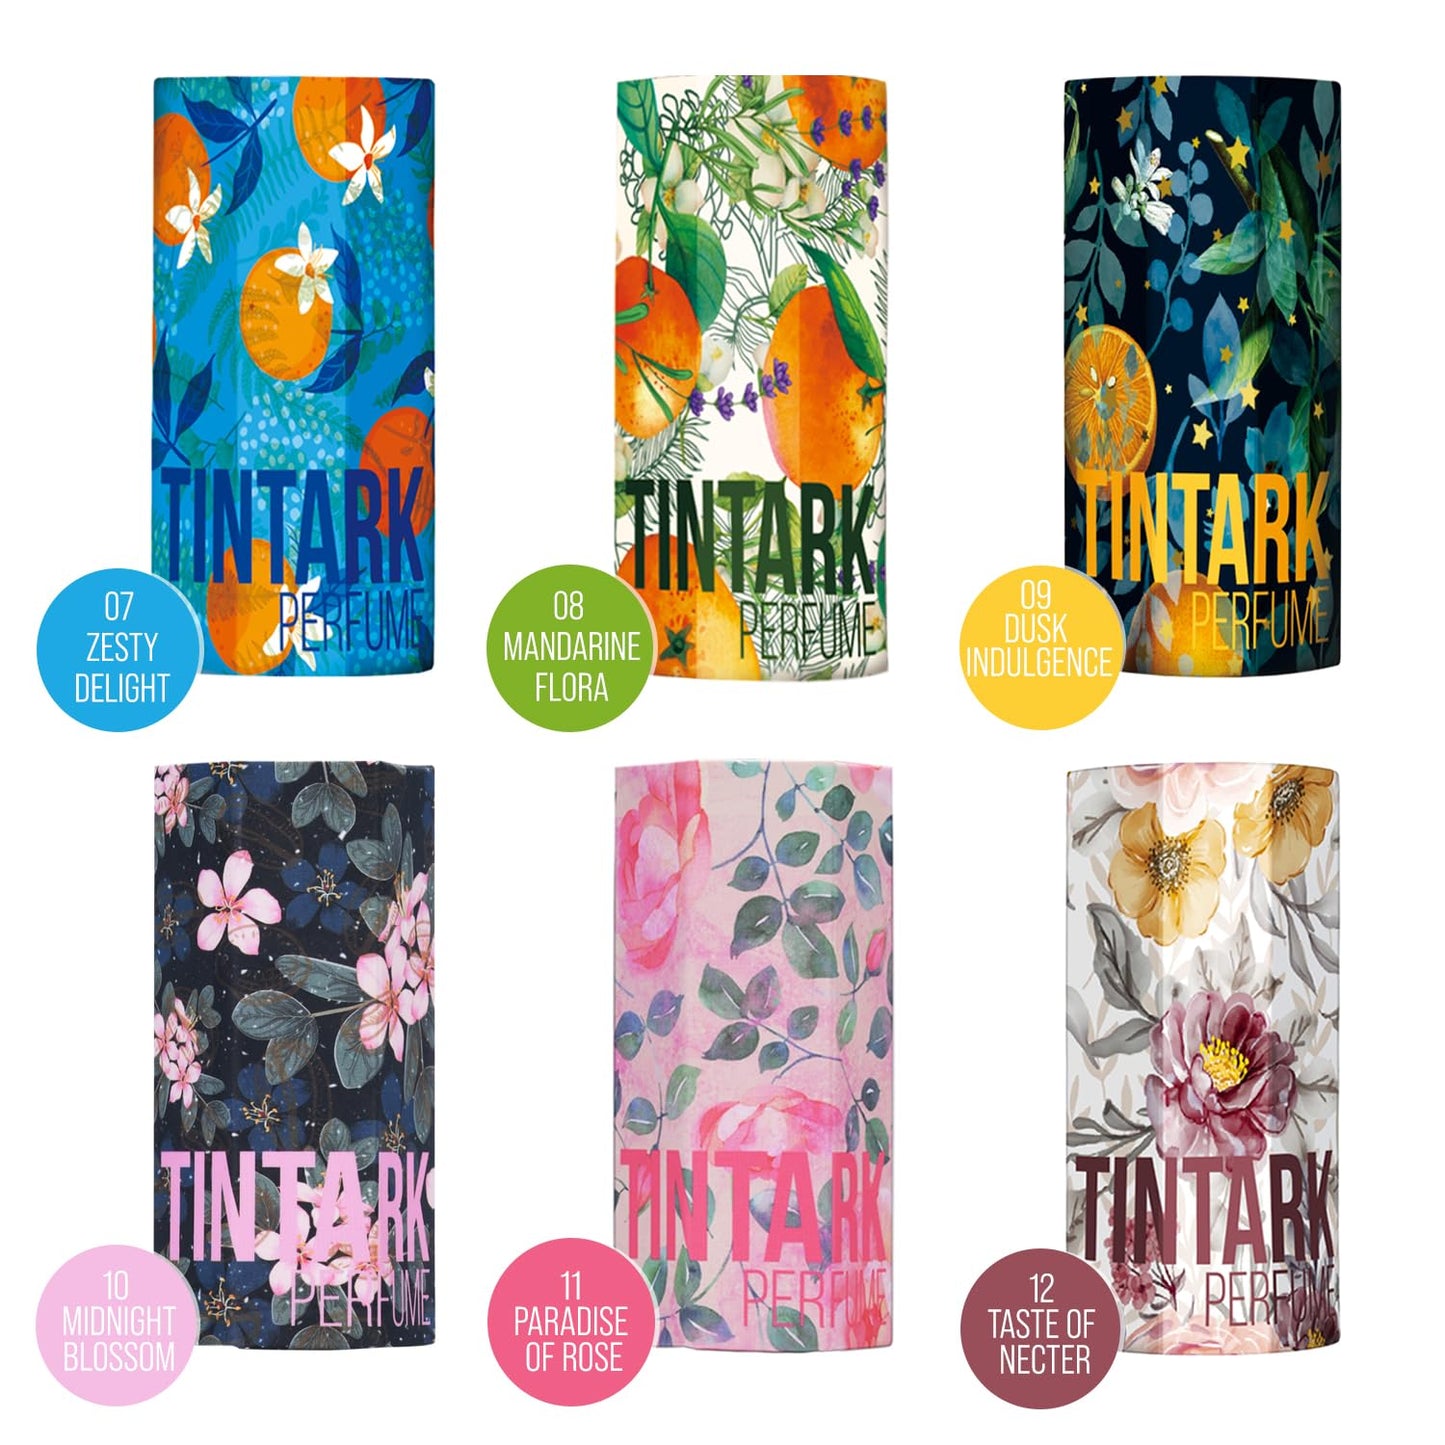 Tintark Fester Parfümstift – 08 Mandarine Flora 